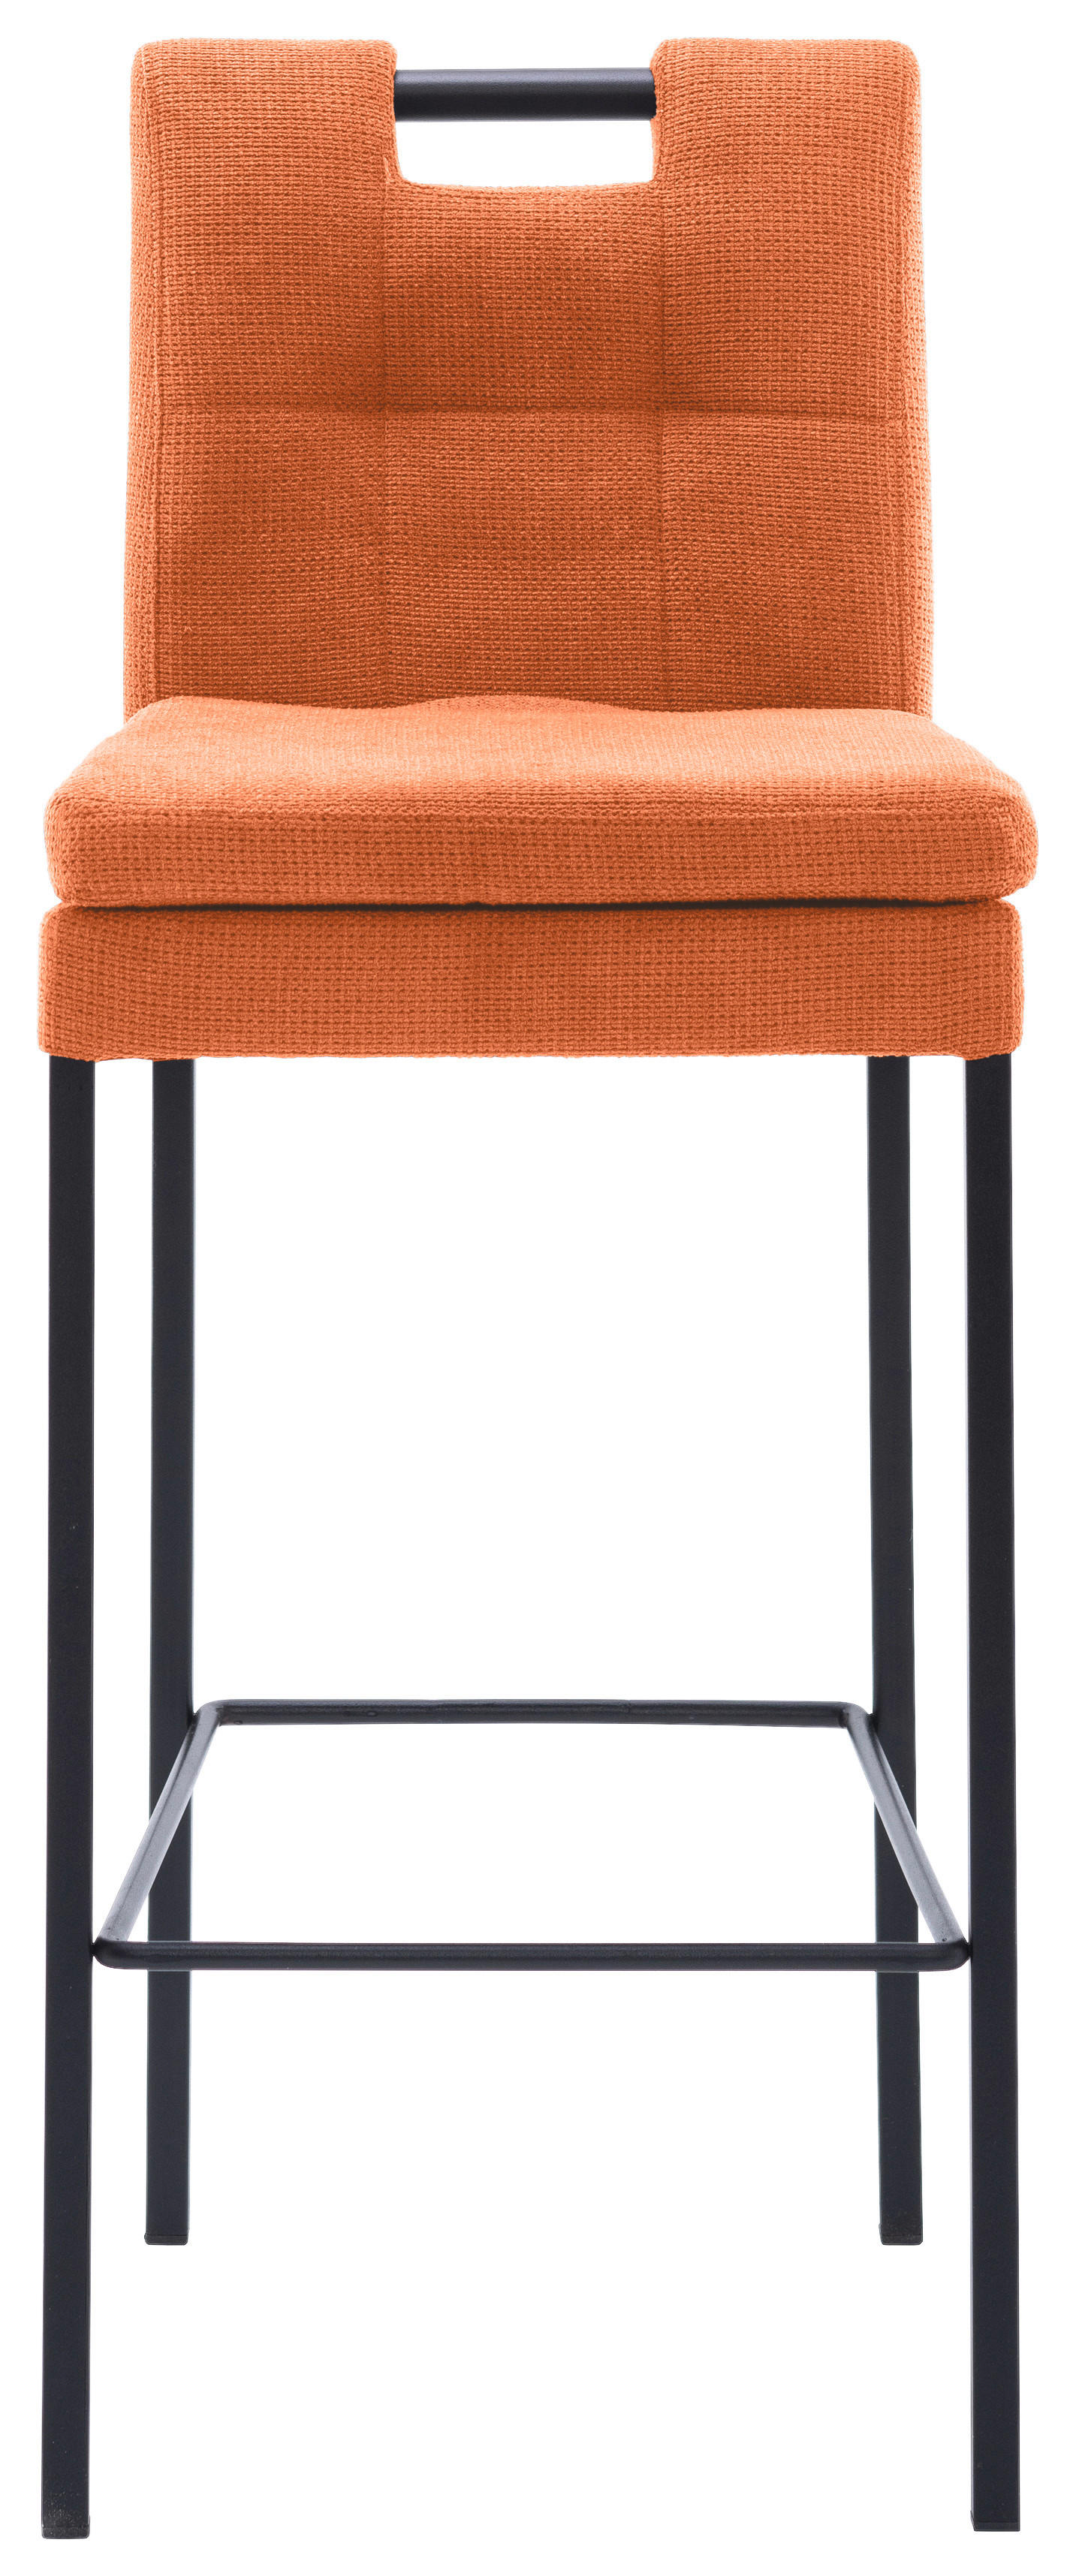 BARHOCKER Webstoff Orange, Schwarz  - Schwarz/Orange, Design, Textil/Metall (42/102/52cm) - Cantus